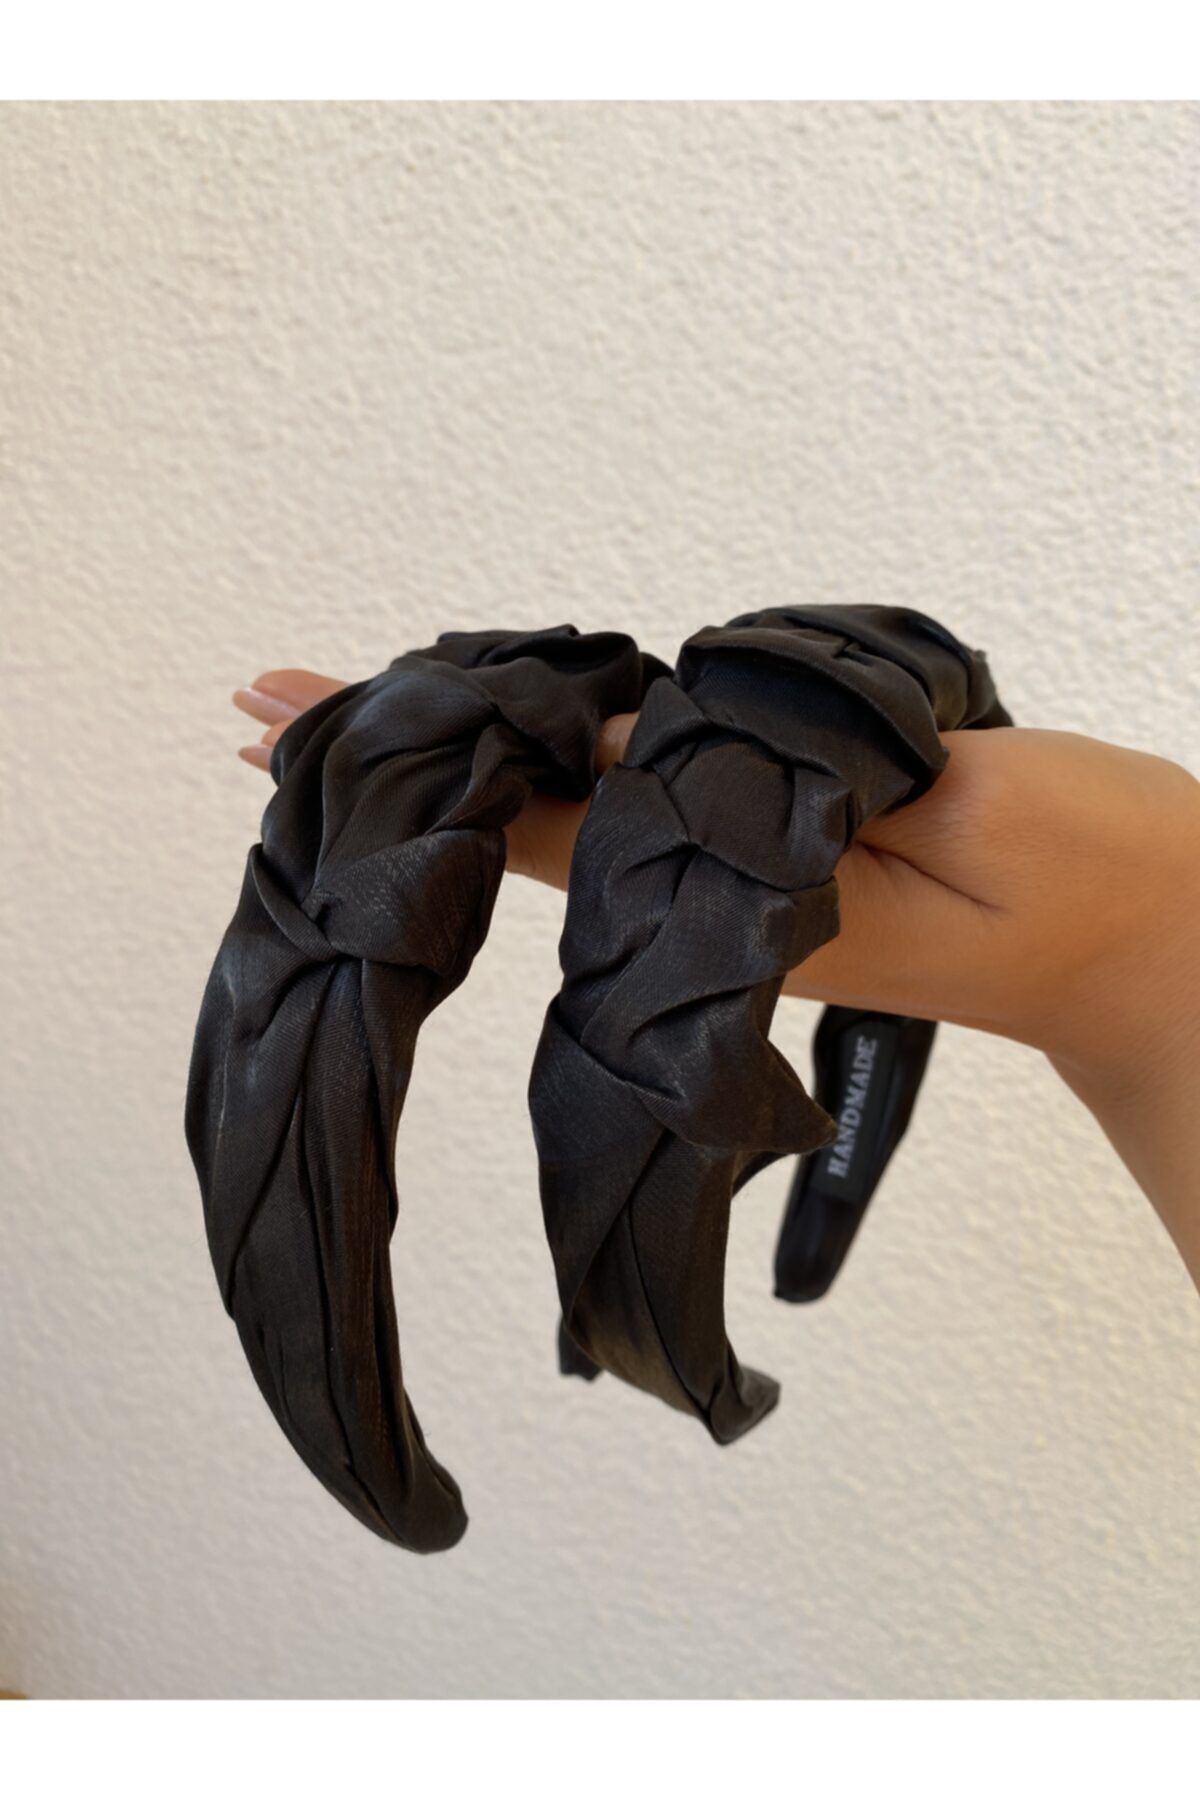 Âlâ Atelier Siyah Büzgülü Kumaş Taç Saç Aksesuarı